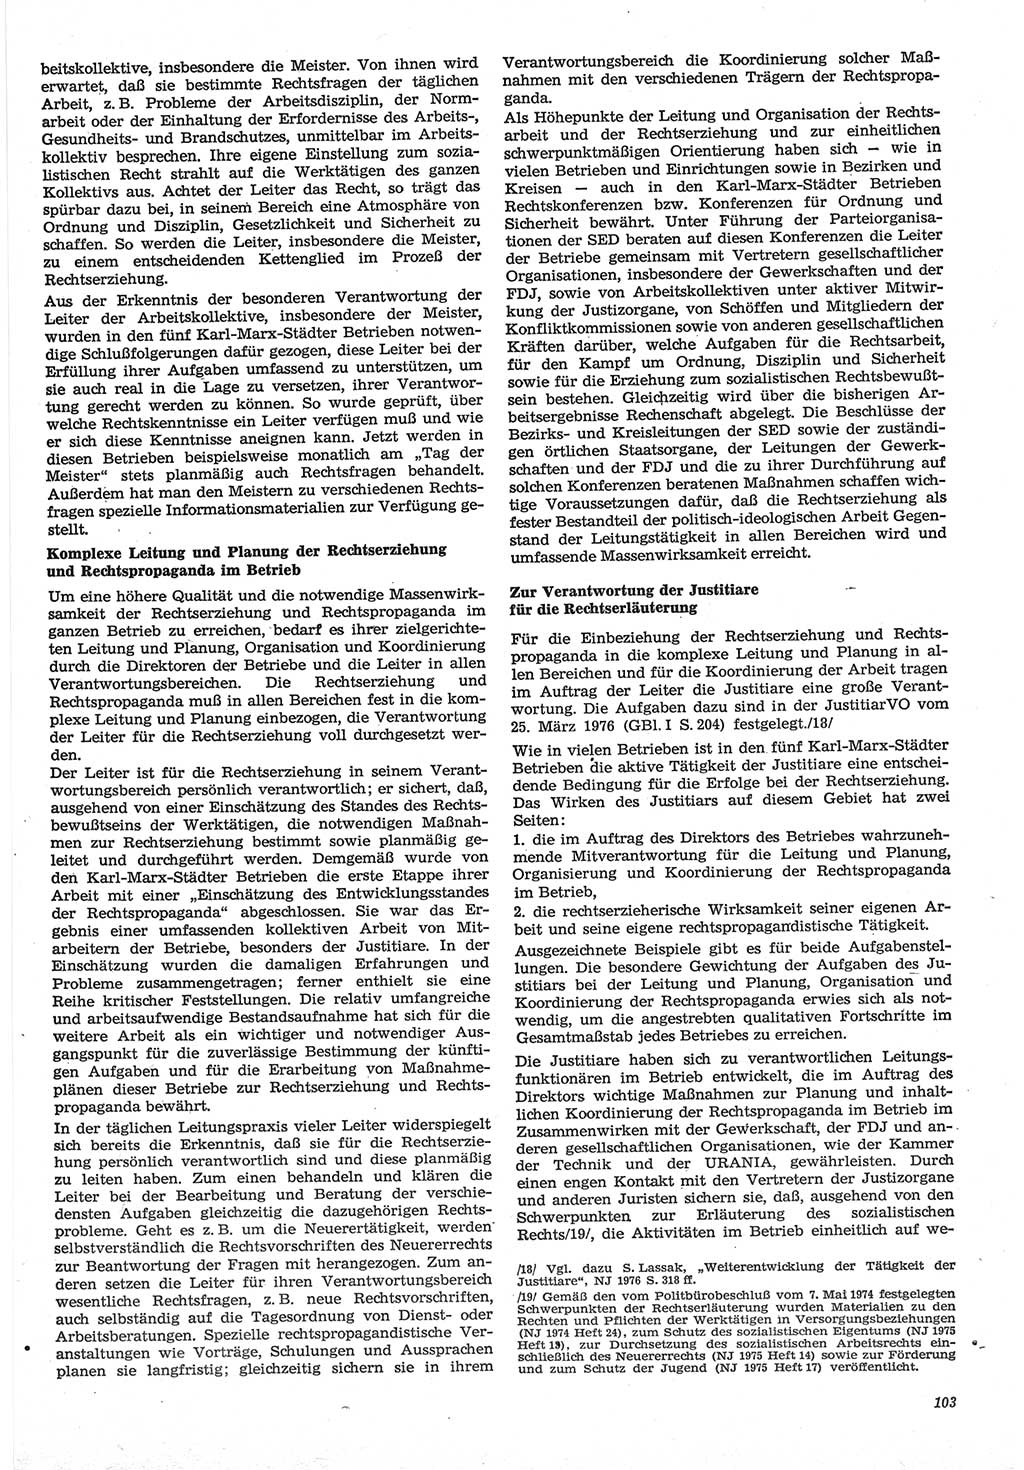 Neue Justiz (NJ), Zeitschrift für Recht und Rechtswissenschaft-Zeitschrift, sozialistisches Recht und Gesetzlichkeit, 31. Jahrgang 1977, Seite 103 (NJ DDR 1977, S. 103)